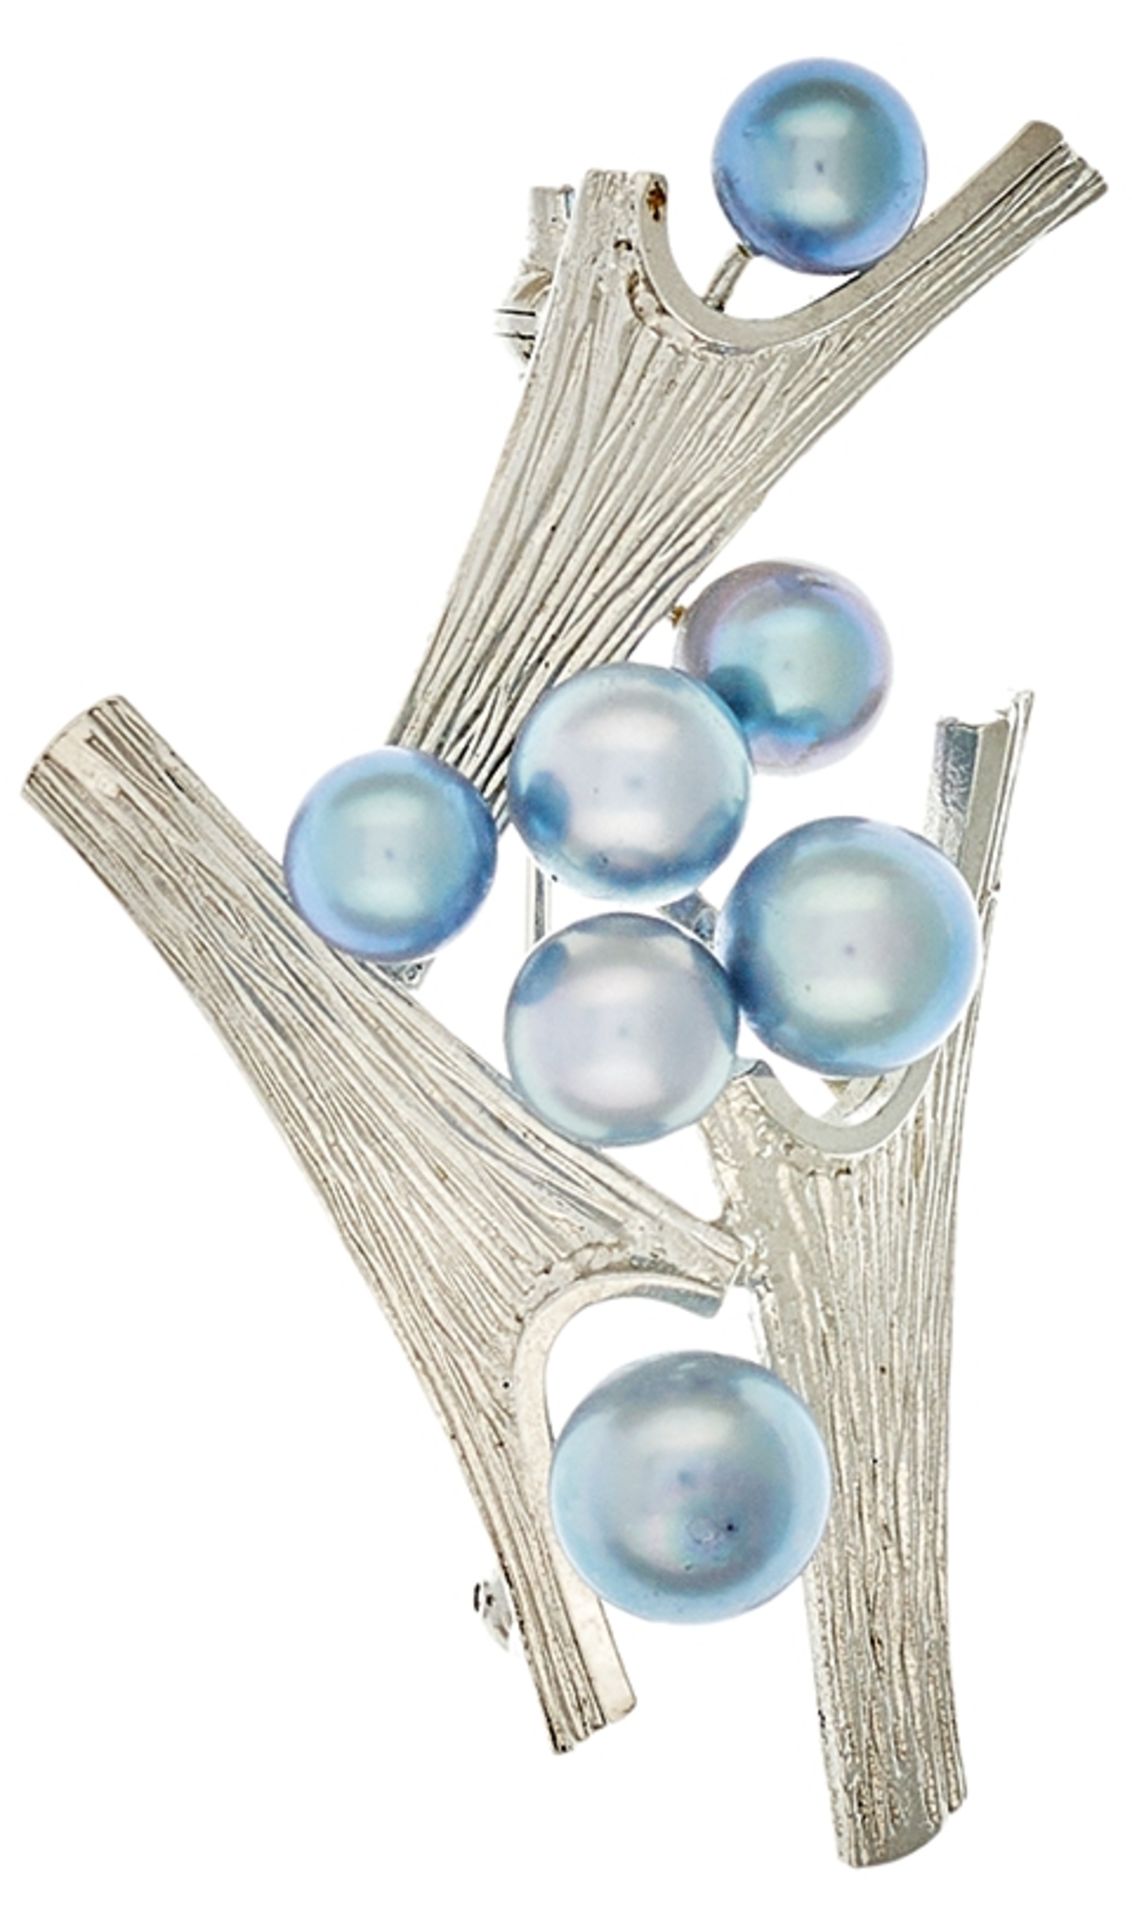 Perl Brosche, 950 Platin, 8,4g, besetzt mit 7 hellblaue Perlen in Dm zw. 5,4-7,2mm, gestempelt.